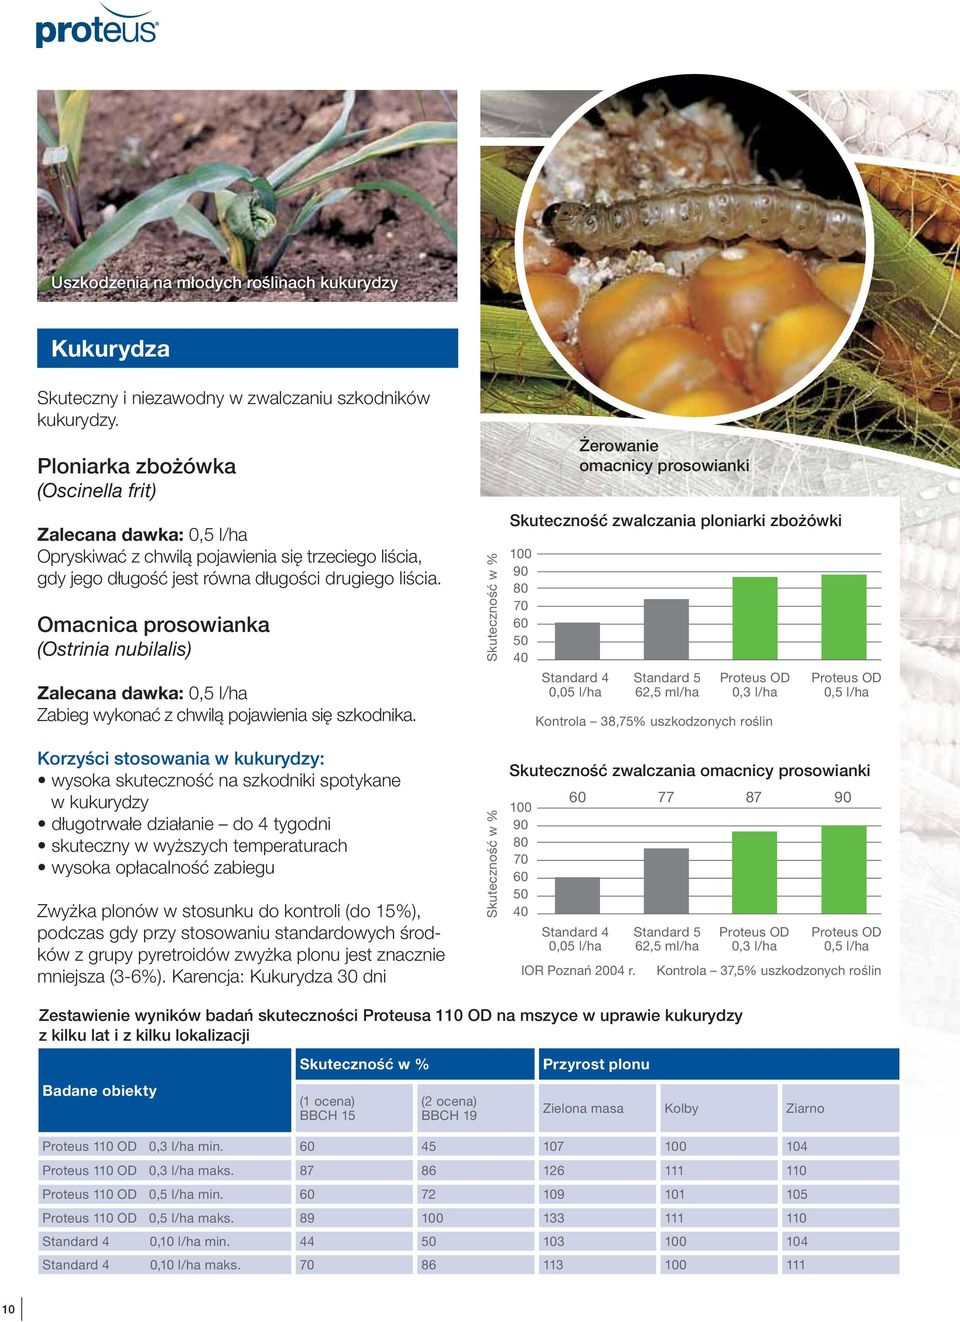 Omacnica prosowianka (Ostrinia nubilalis) Zalecana dawka: 0,5 l/ha Zabieg wykonać z chwilą pojawienia się szkodnika.